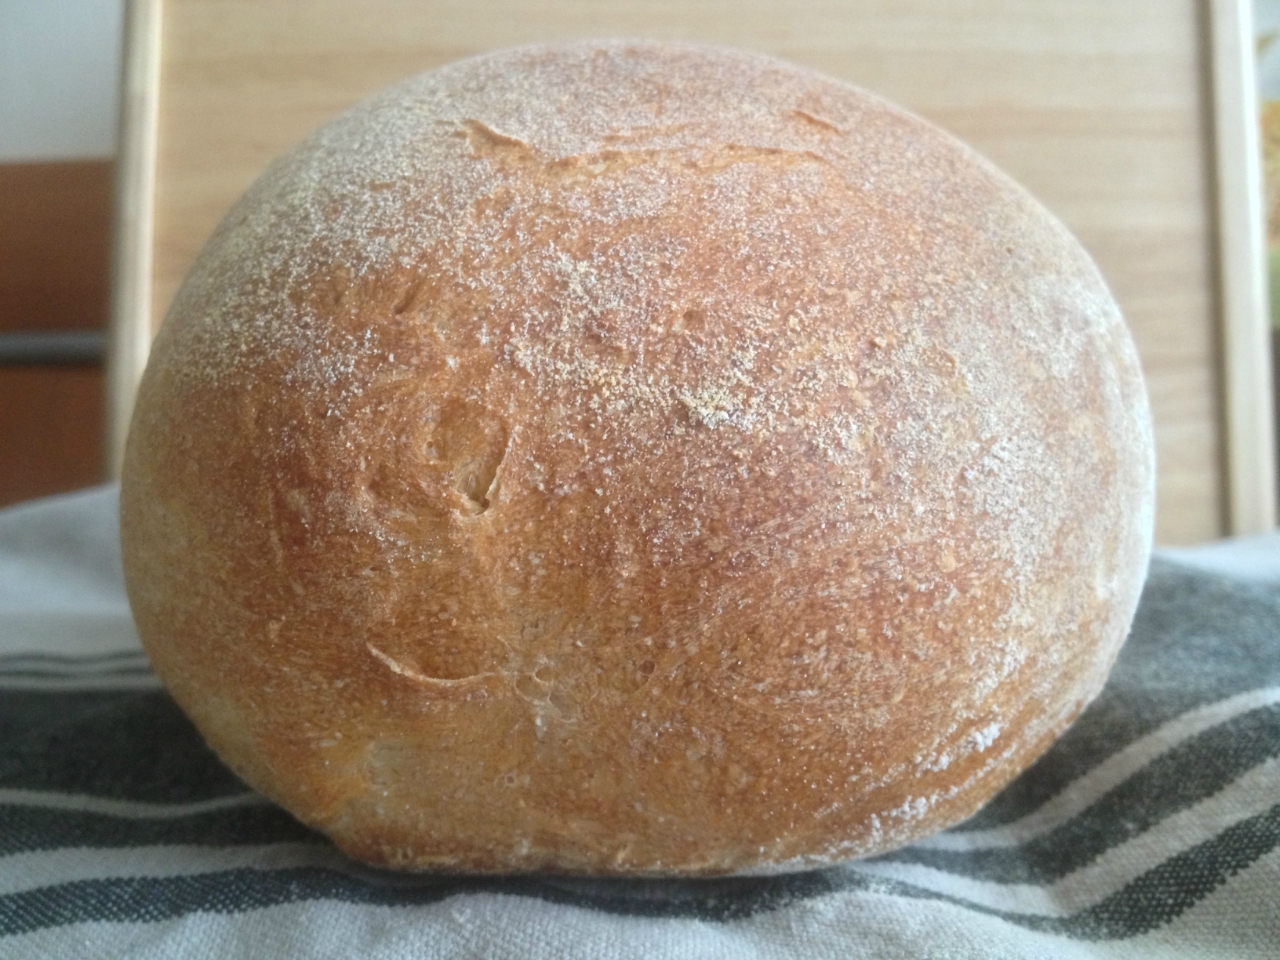 خبز القمح من مانويل فليشا (فرن)